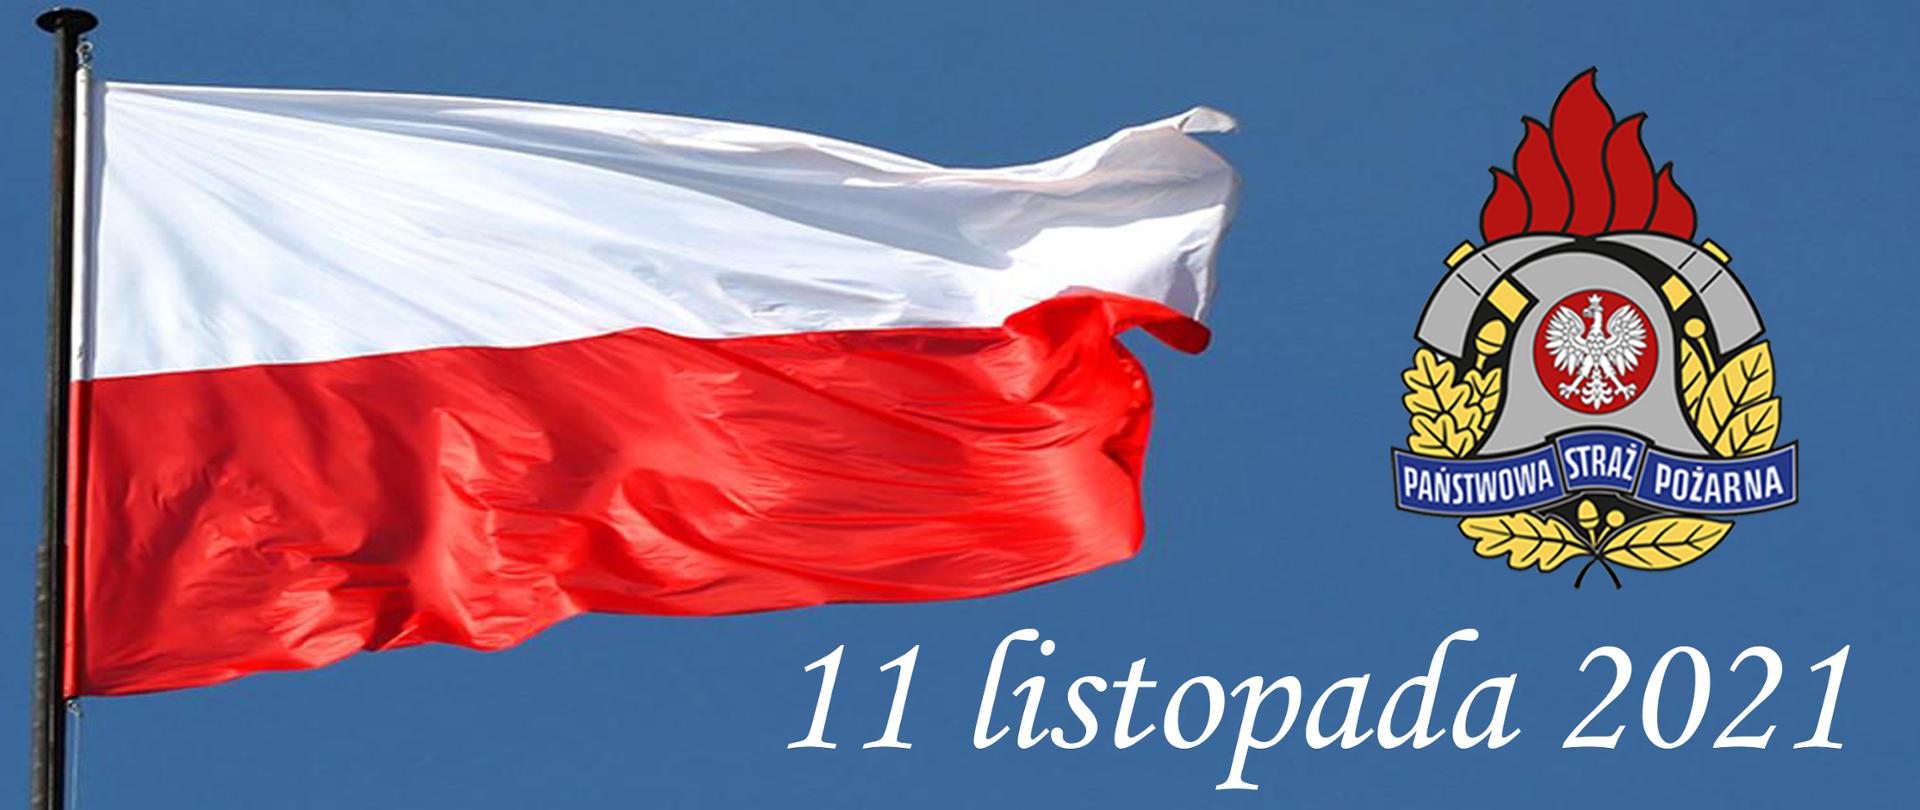 Infografika przedstawiająca powiewającą na wietrze biało czerwoną flagę Polski na błękitnym tle, obok kolorowy logotyp Państwowej Straży Pożarnej oraz poniżej napis koloru białego o treści 11 listopada 2021.